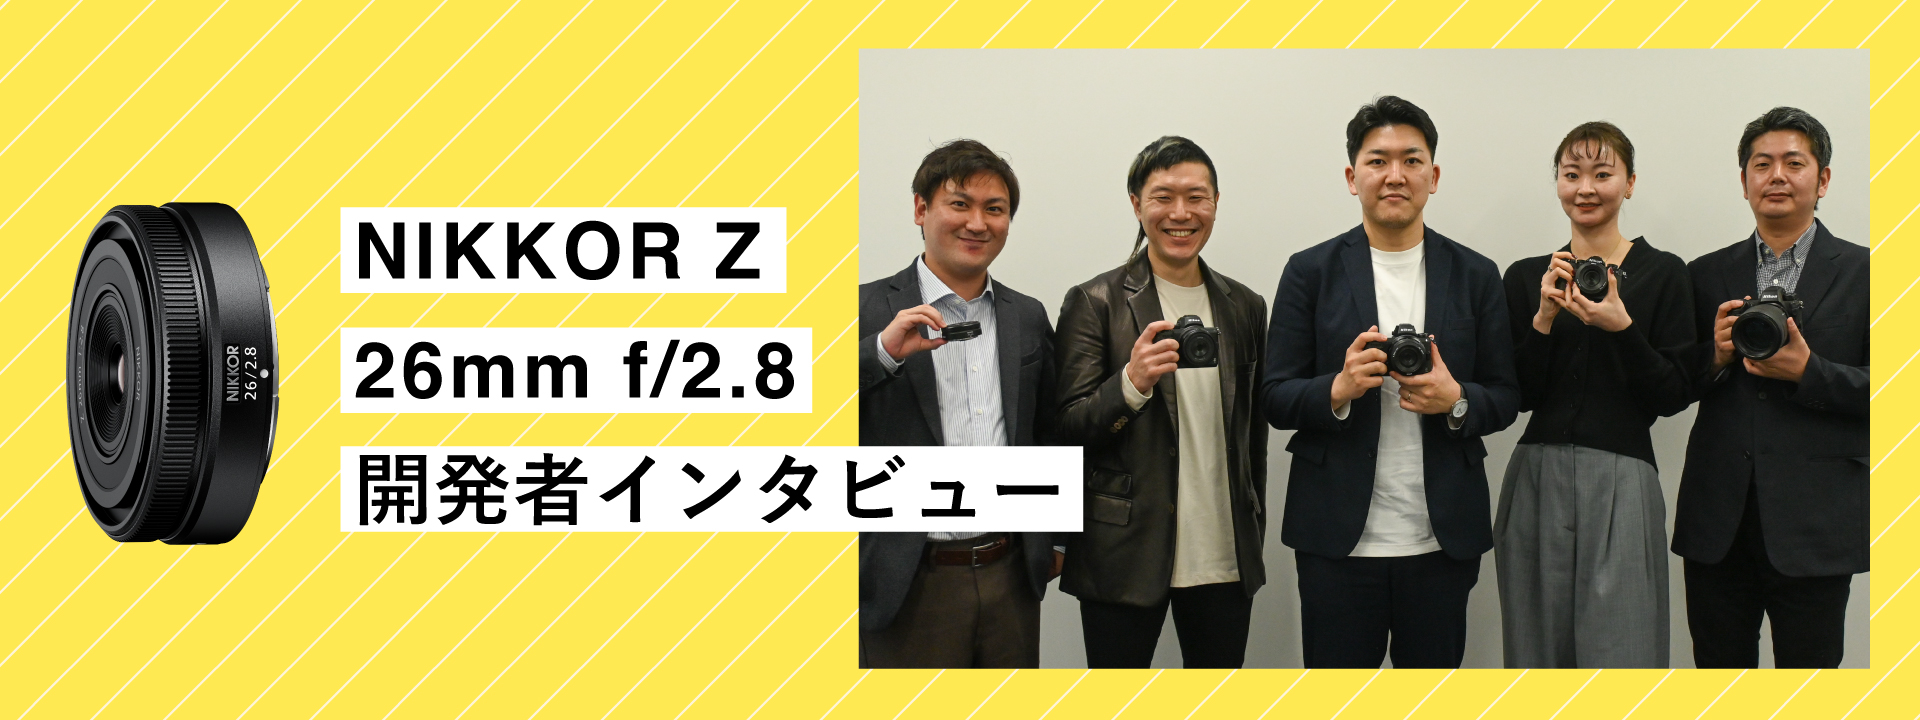 開発者インタビュー | NIKKOR Z 26mm f/2.8 スペシャルコンテンツ